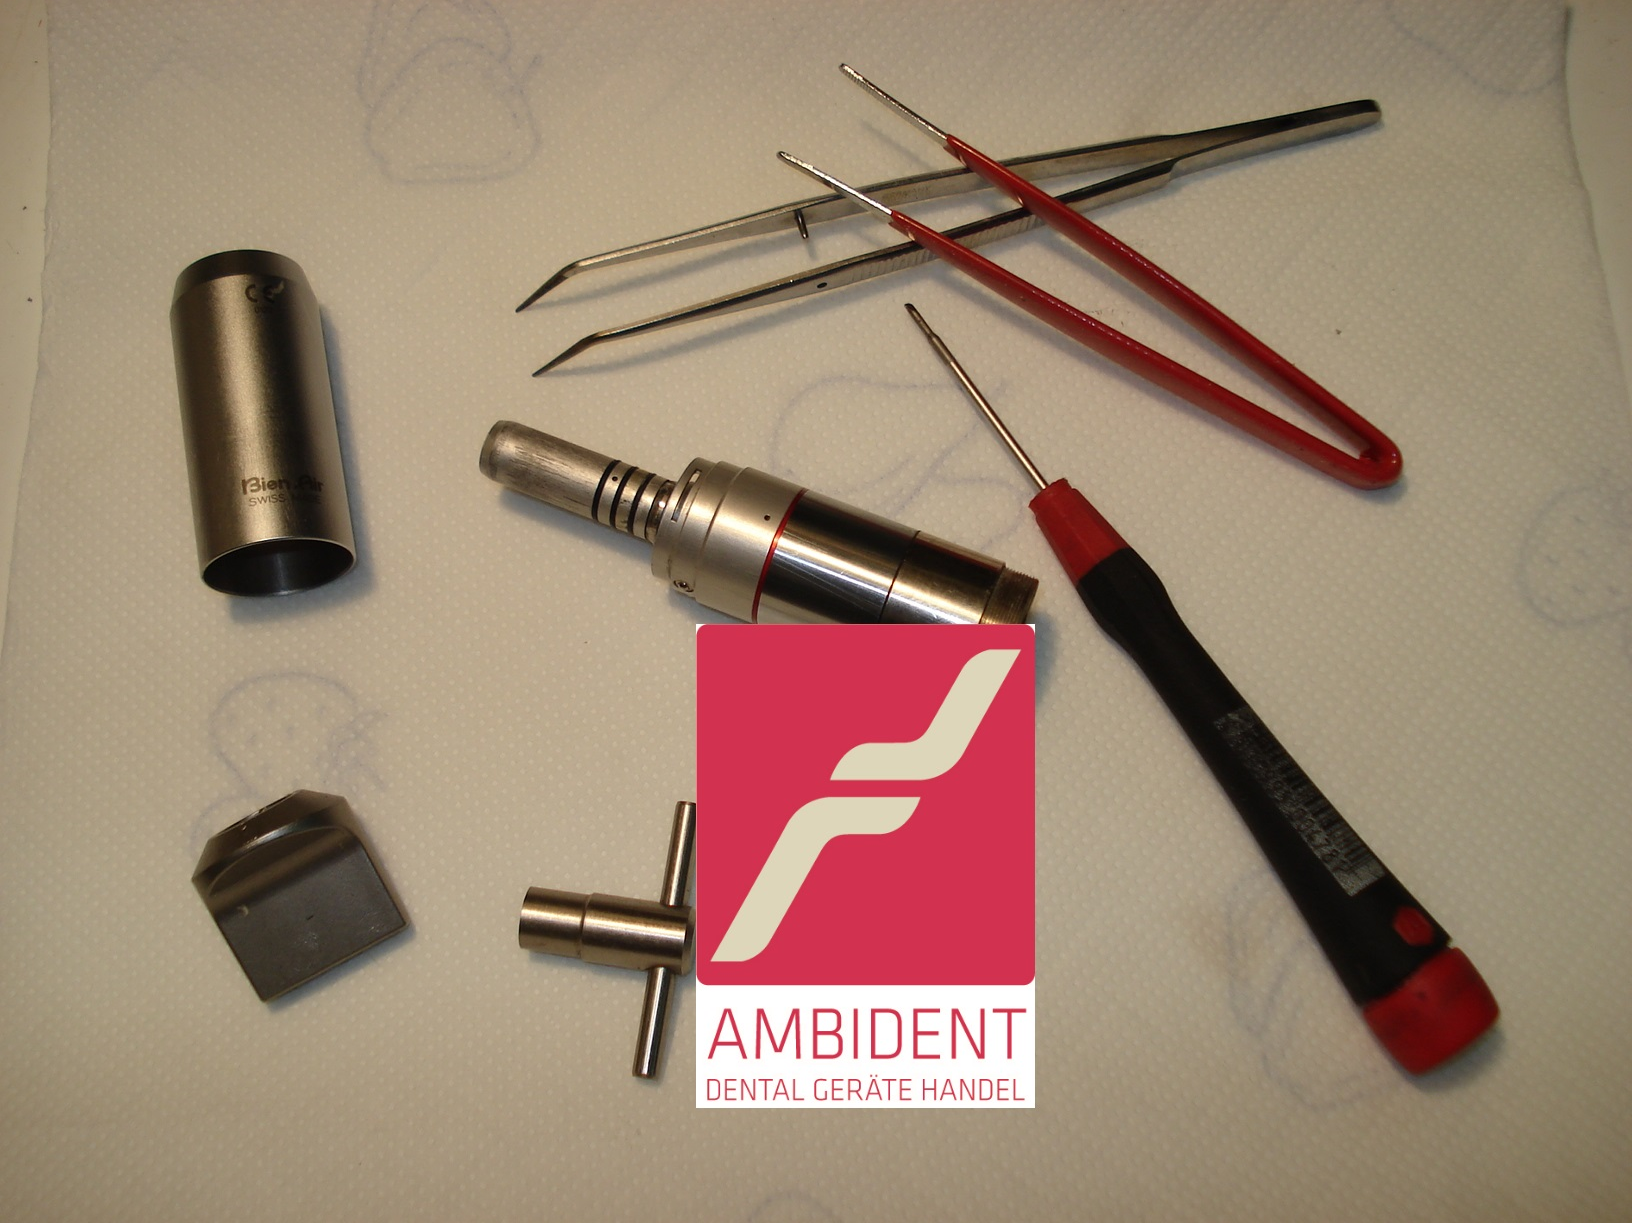 Bild der Ambident GmbH - Dental Geräte Handel und Service